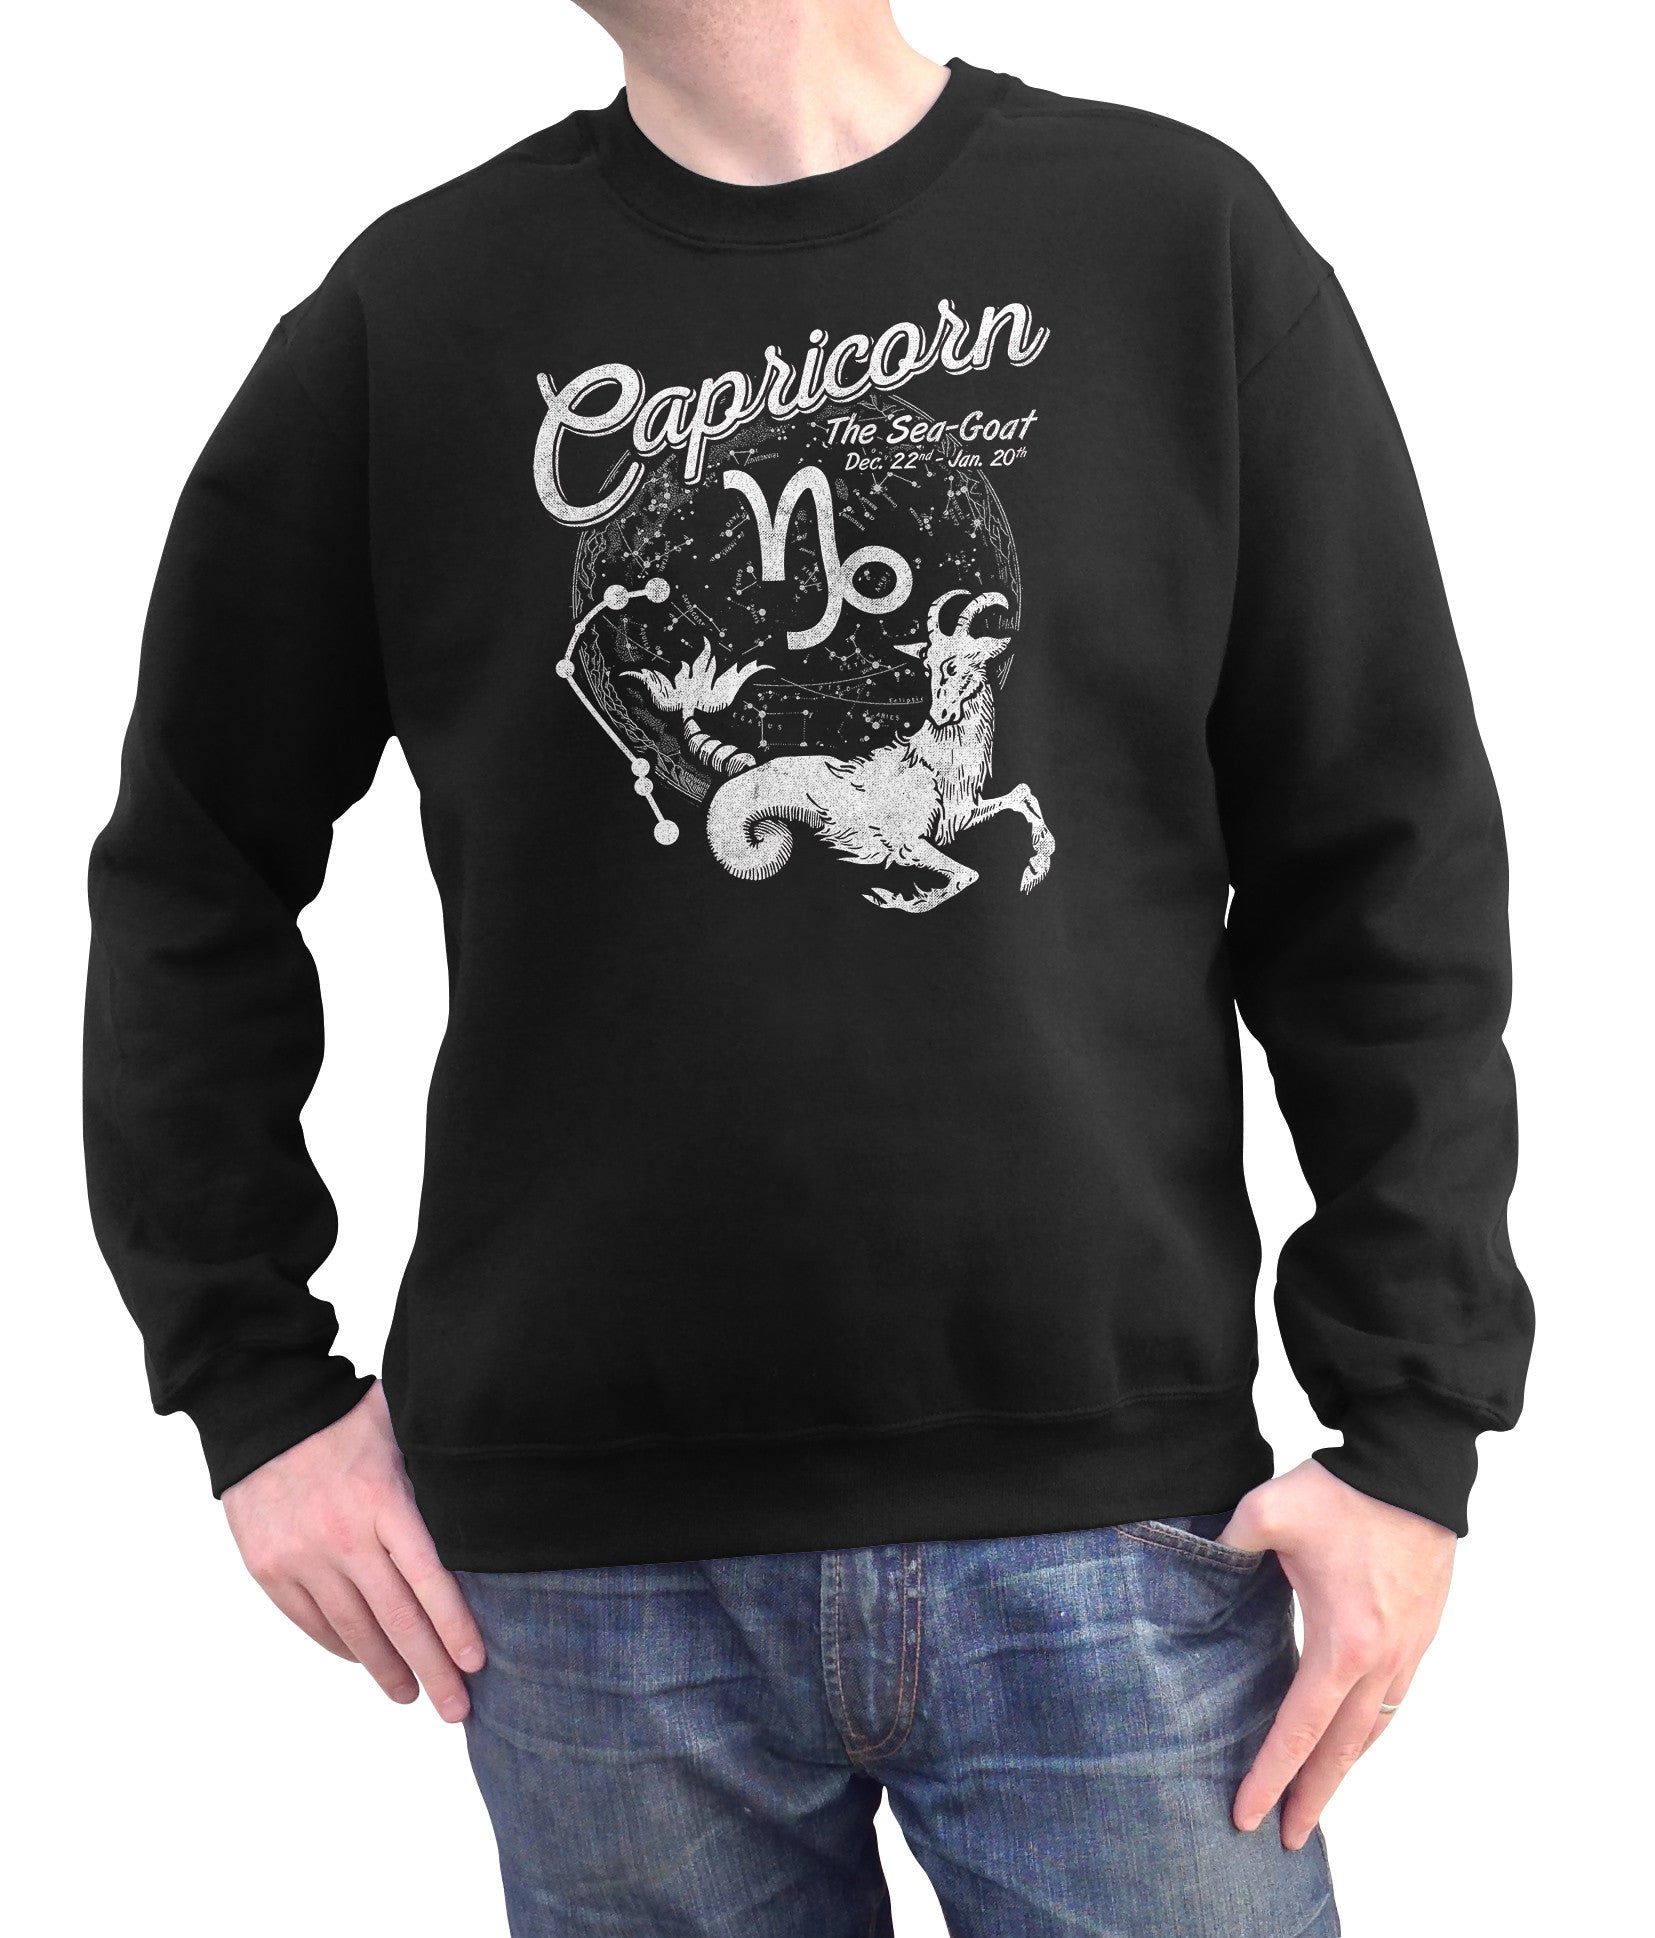 Unisex Vintage Capricorn Sweatshirt